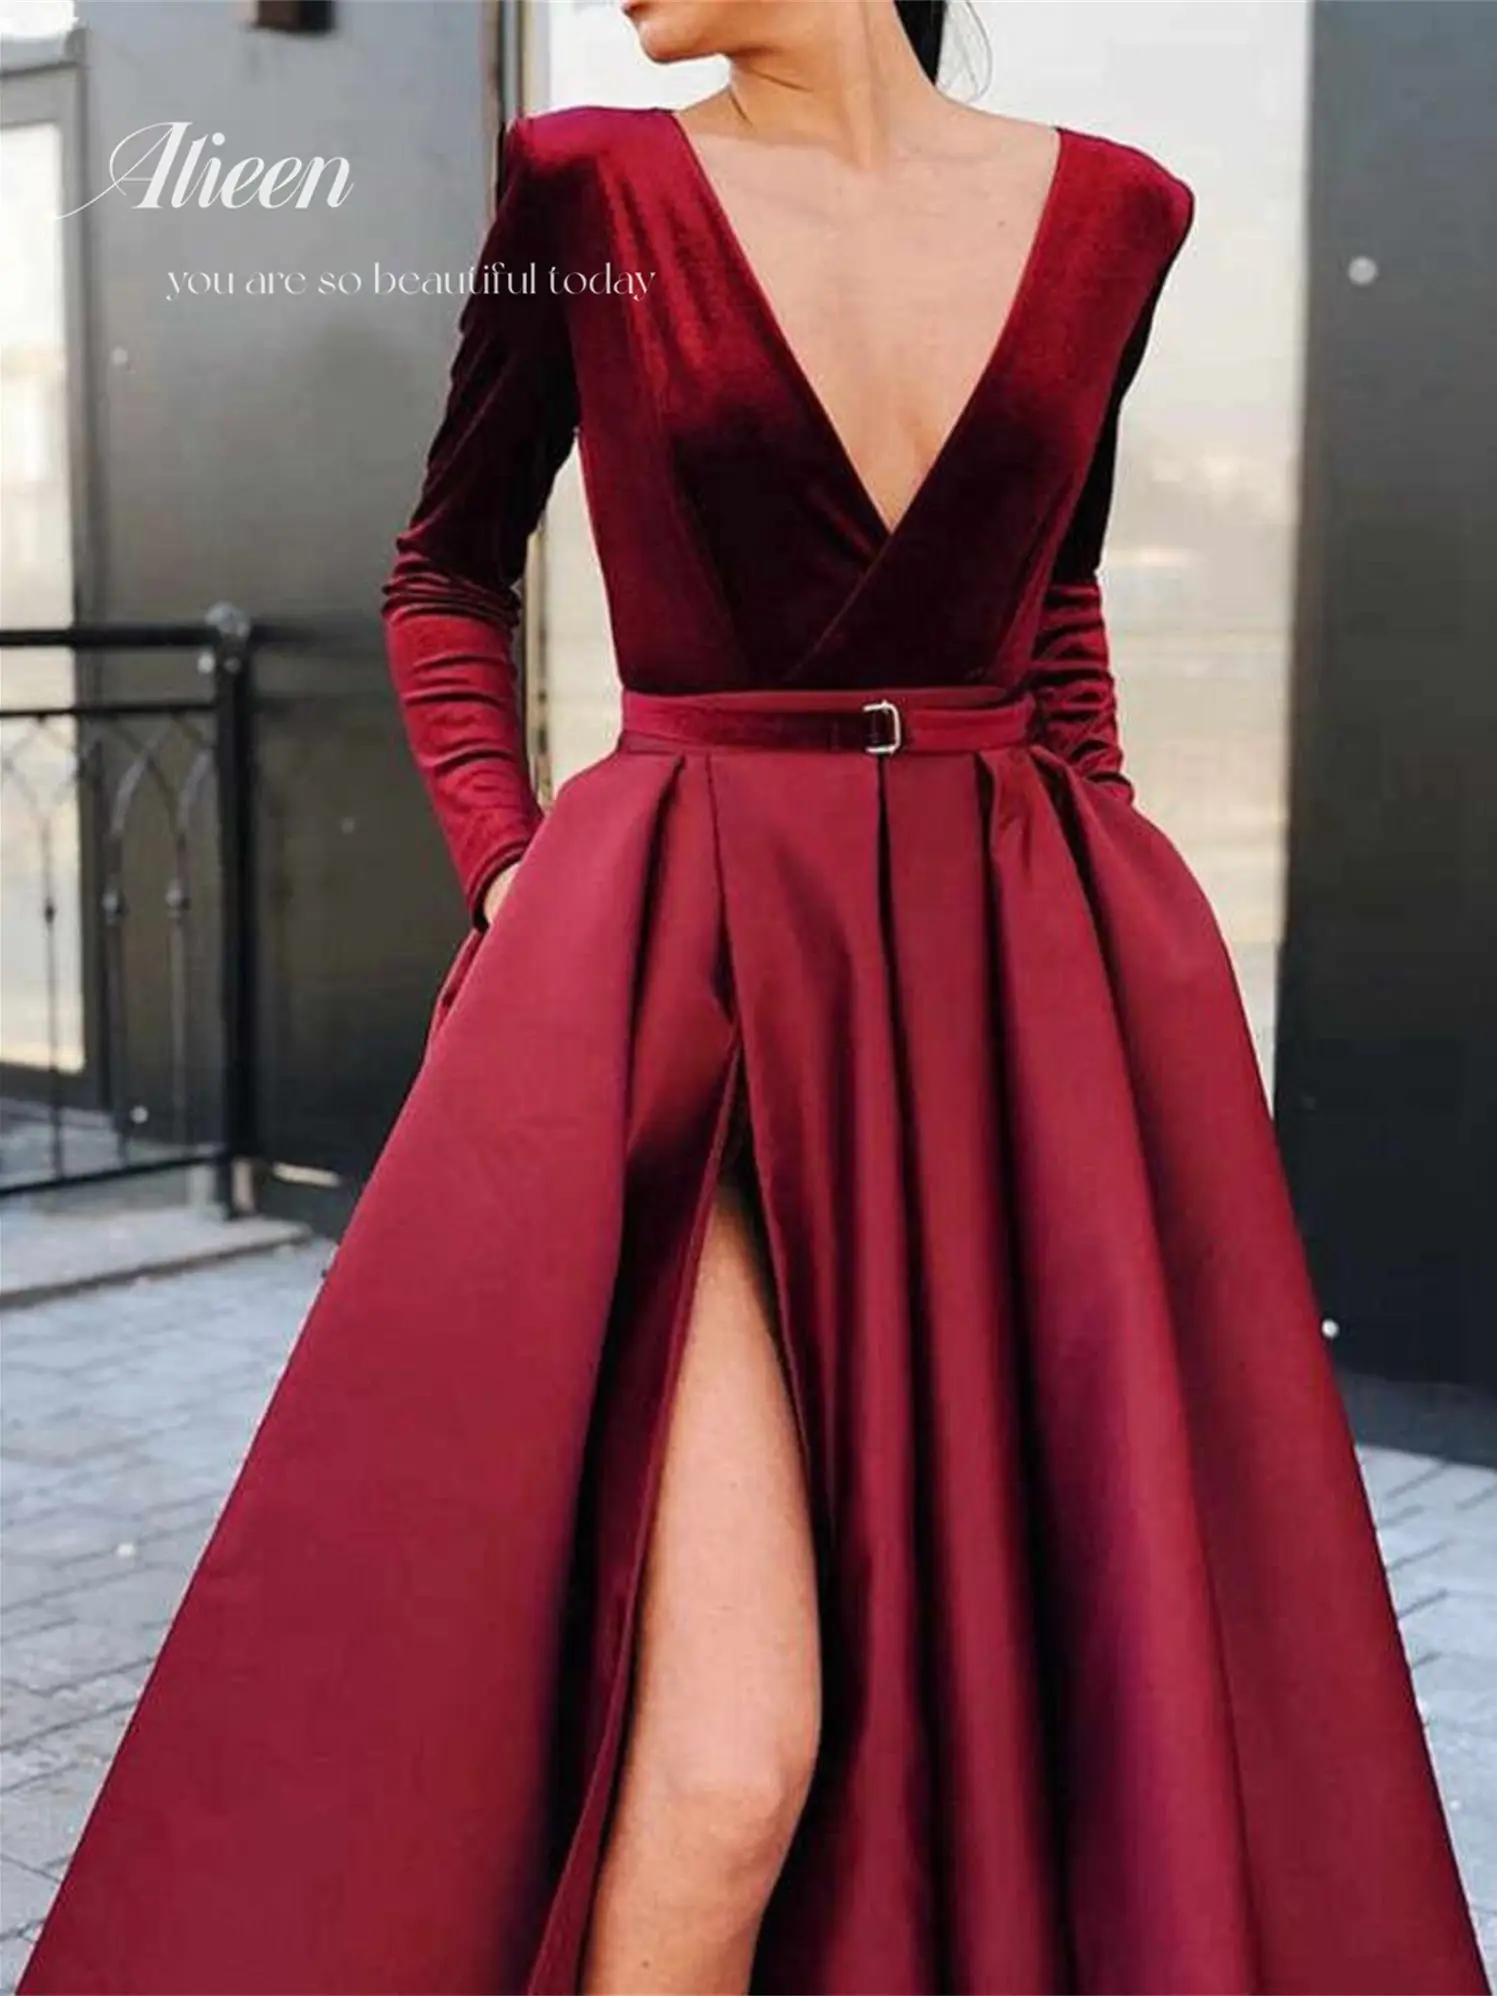 vestido tafeta – Compra vestido fiesta tafeta con envío gratis en AliExpress version